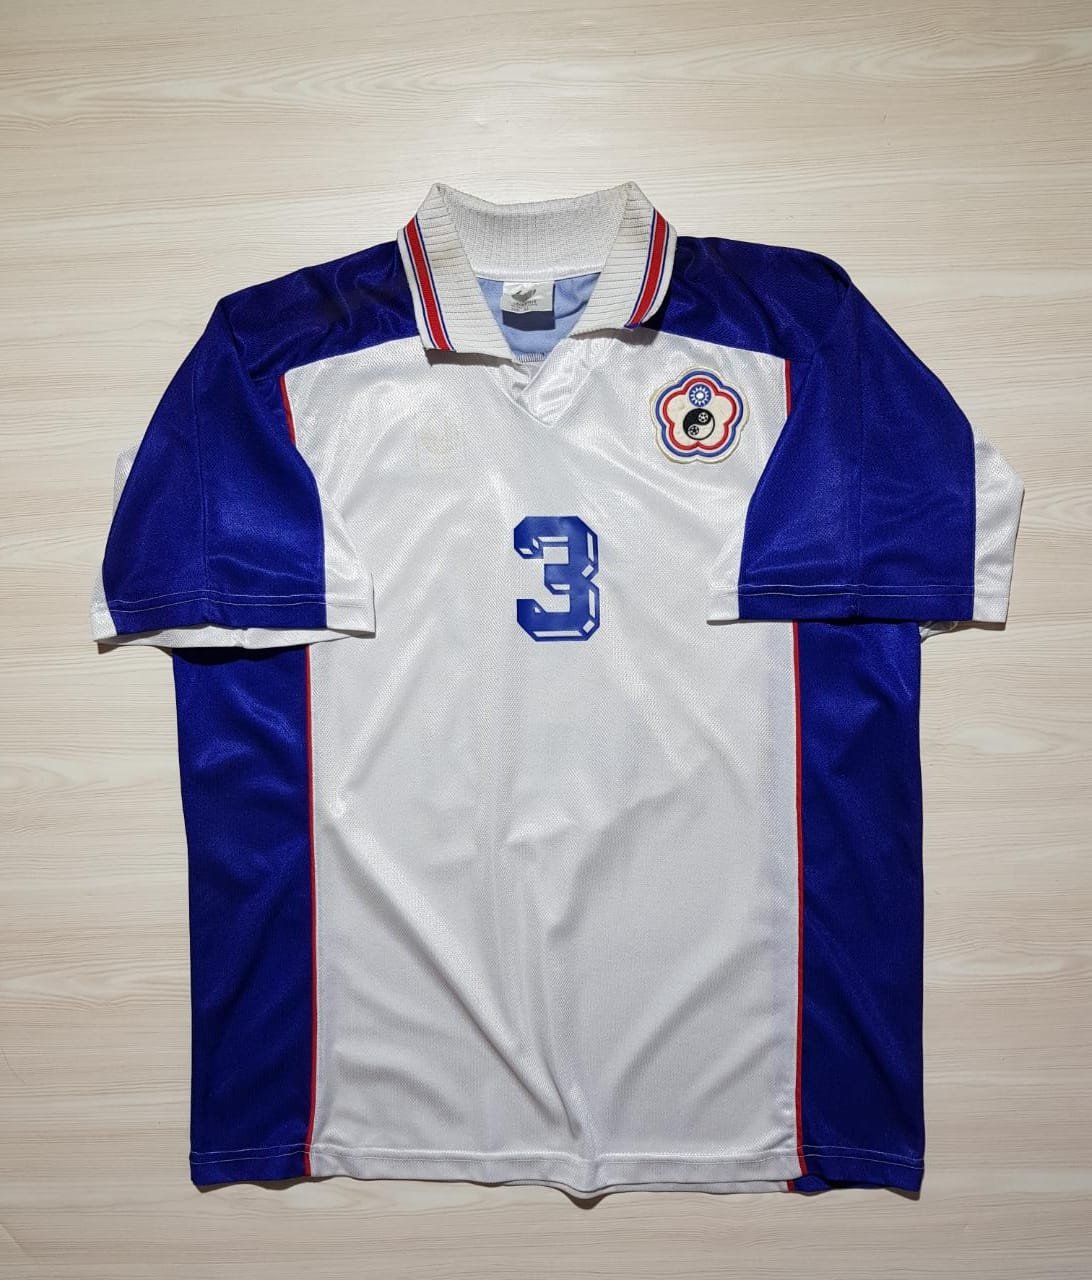 Chinese Taipei Home football shirt 2002 - 2004.